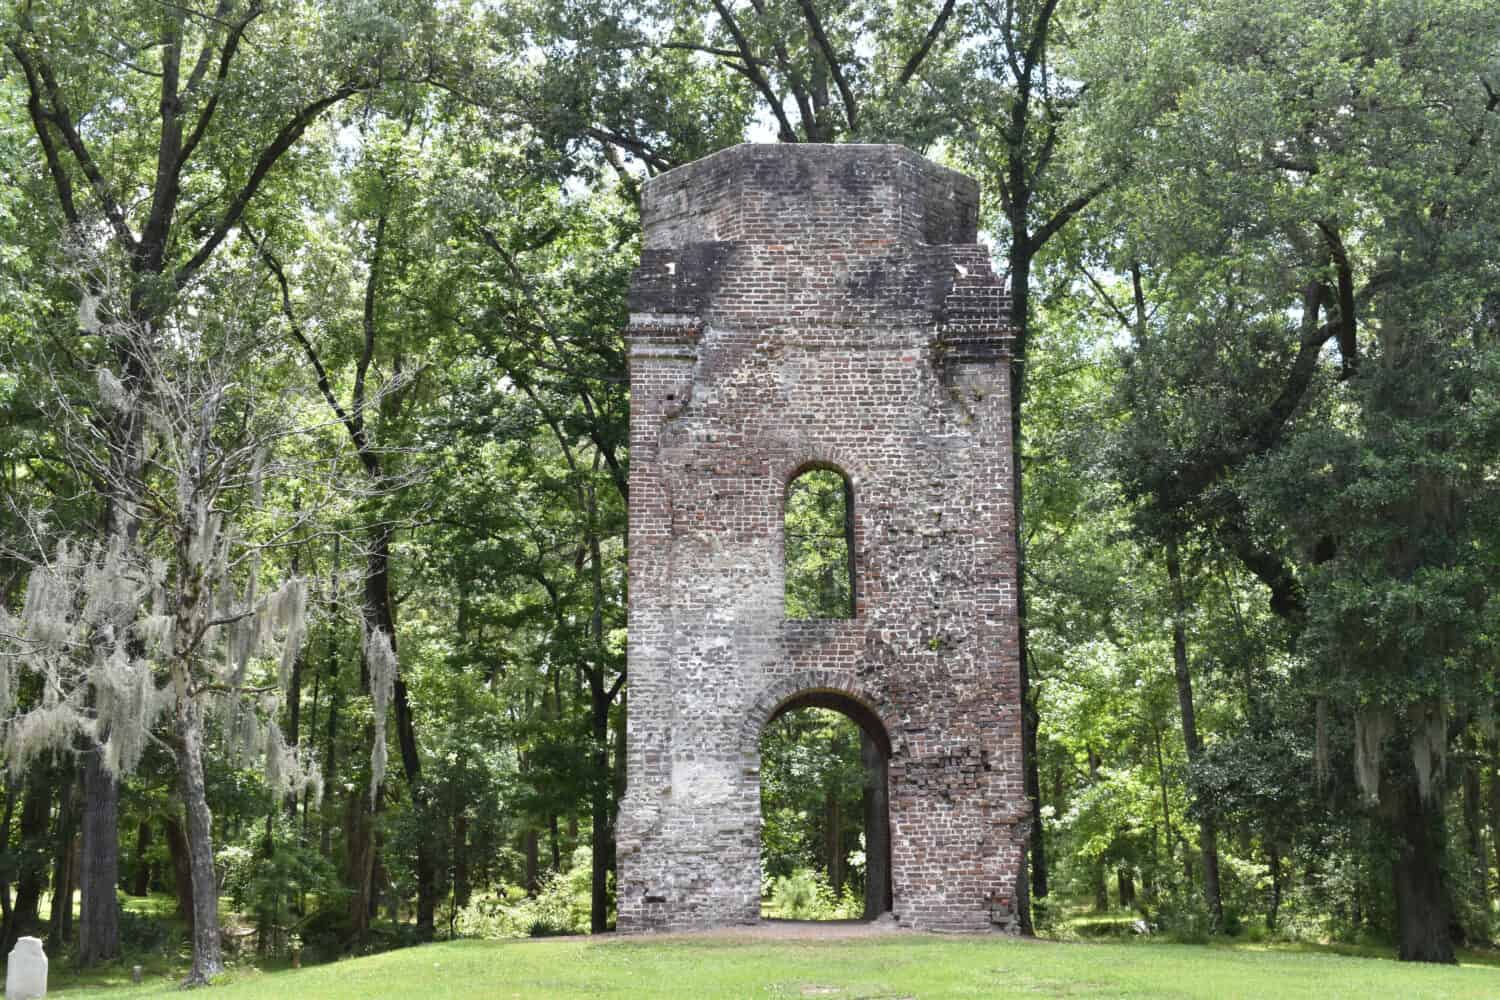 St. George Bell Tower costruito nel 1751 presso il sito storico coloniale dello stato di Dorchester nella Carolina del Sud. 